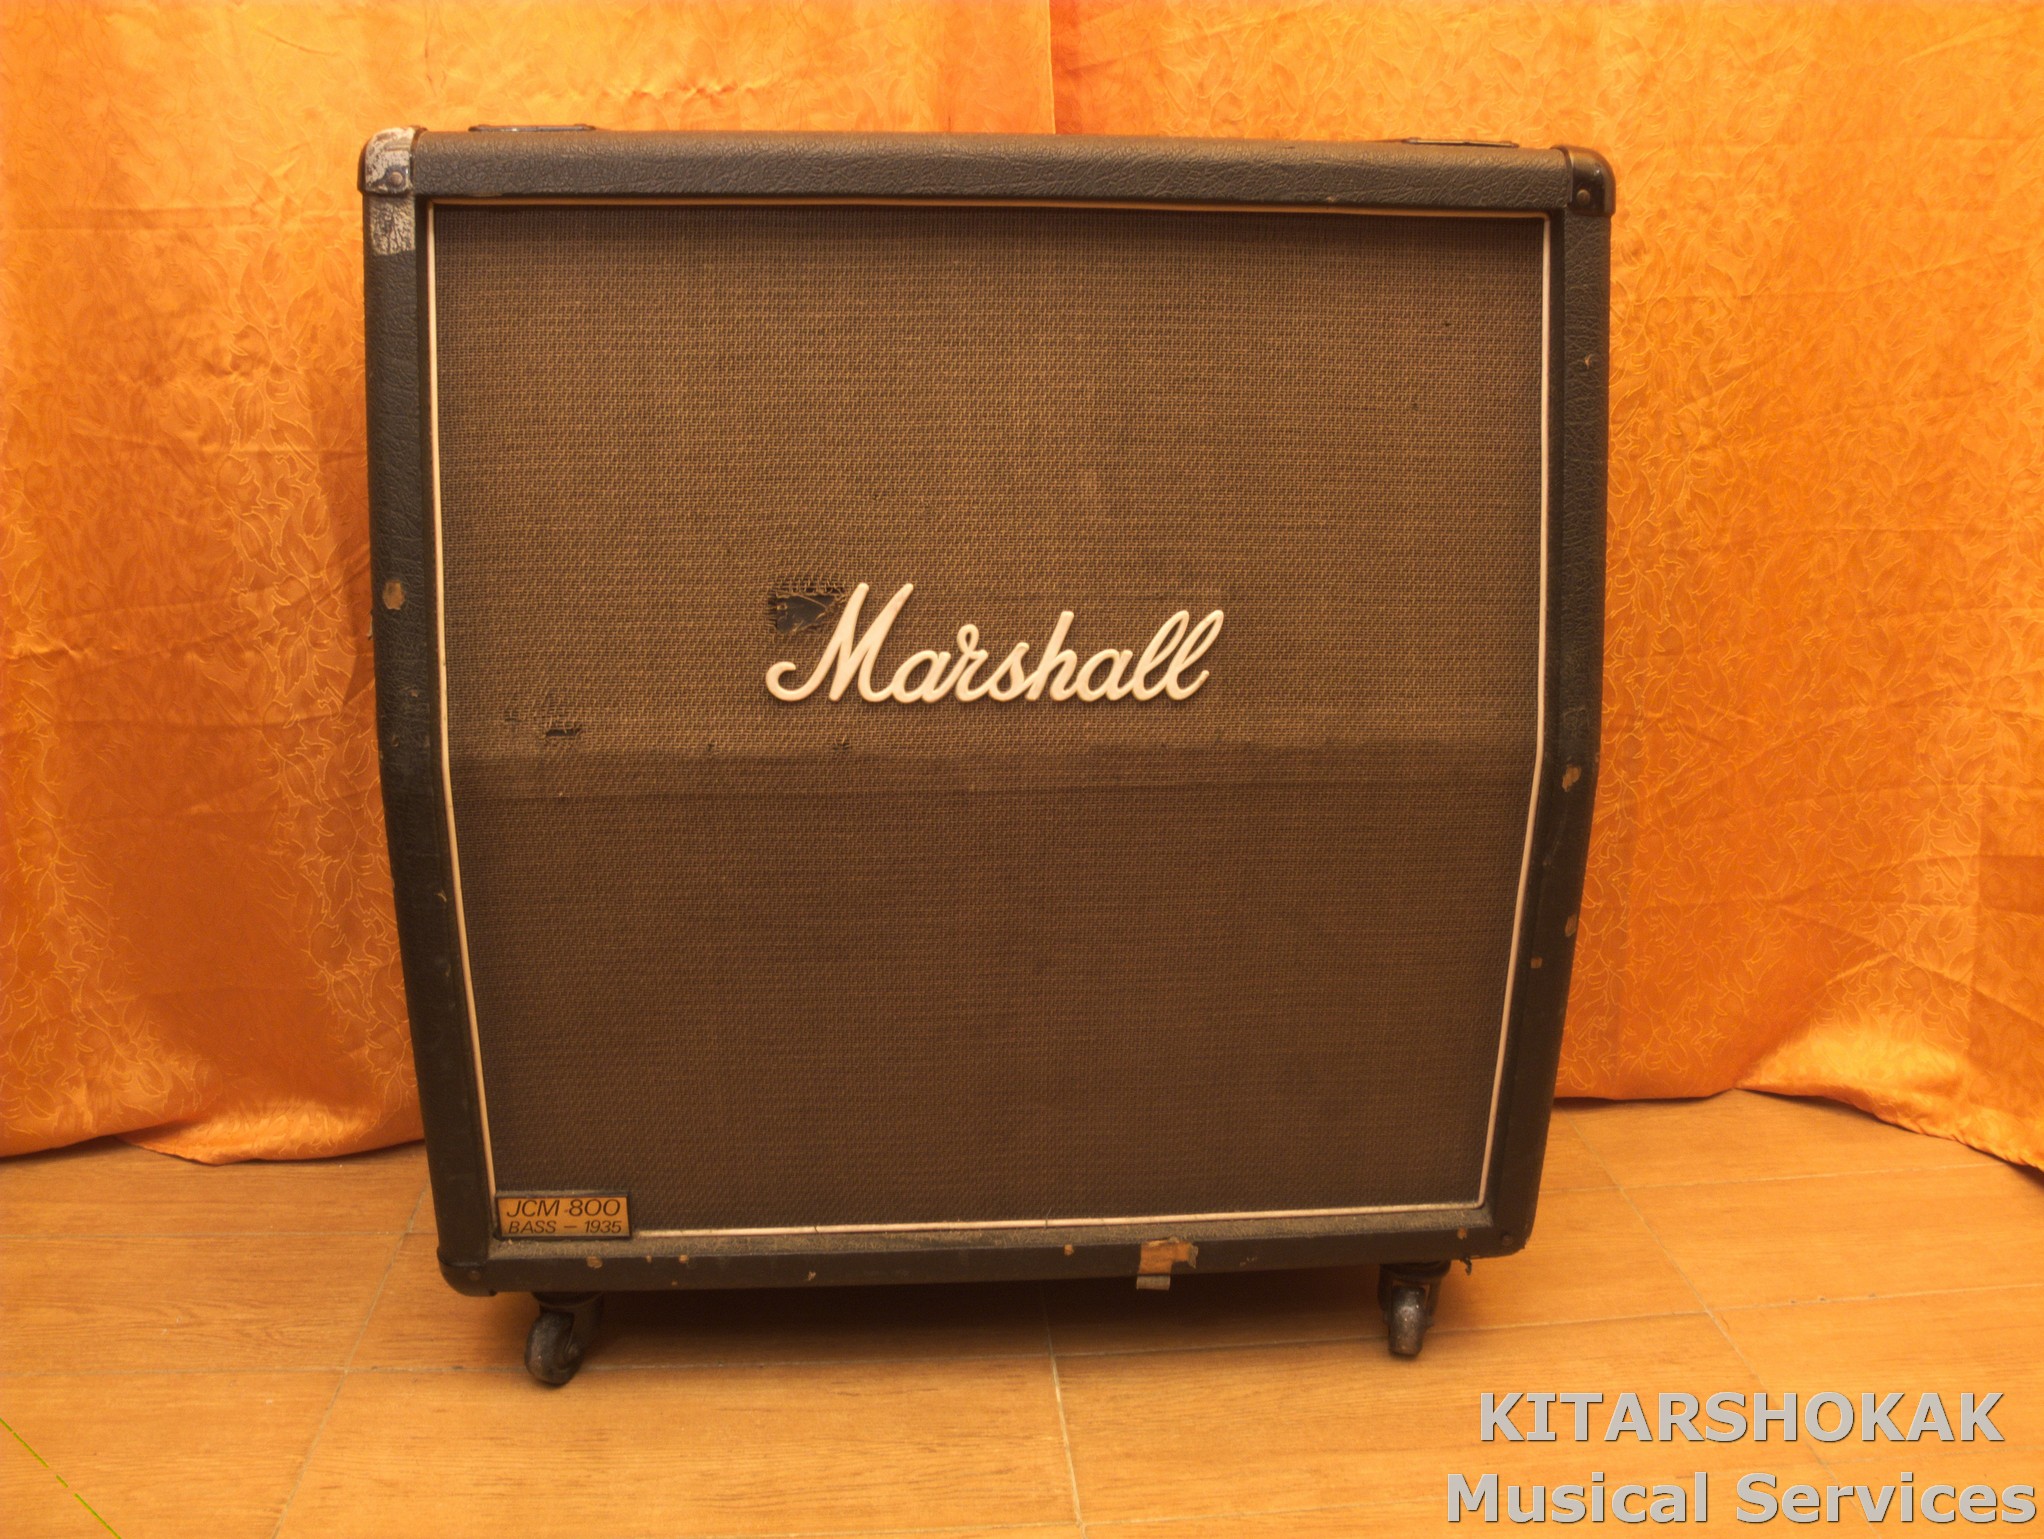 Marshall Jcm800 1935a Celestion G12 65 1985 Amp For Sale Kitarshokak